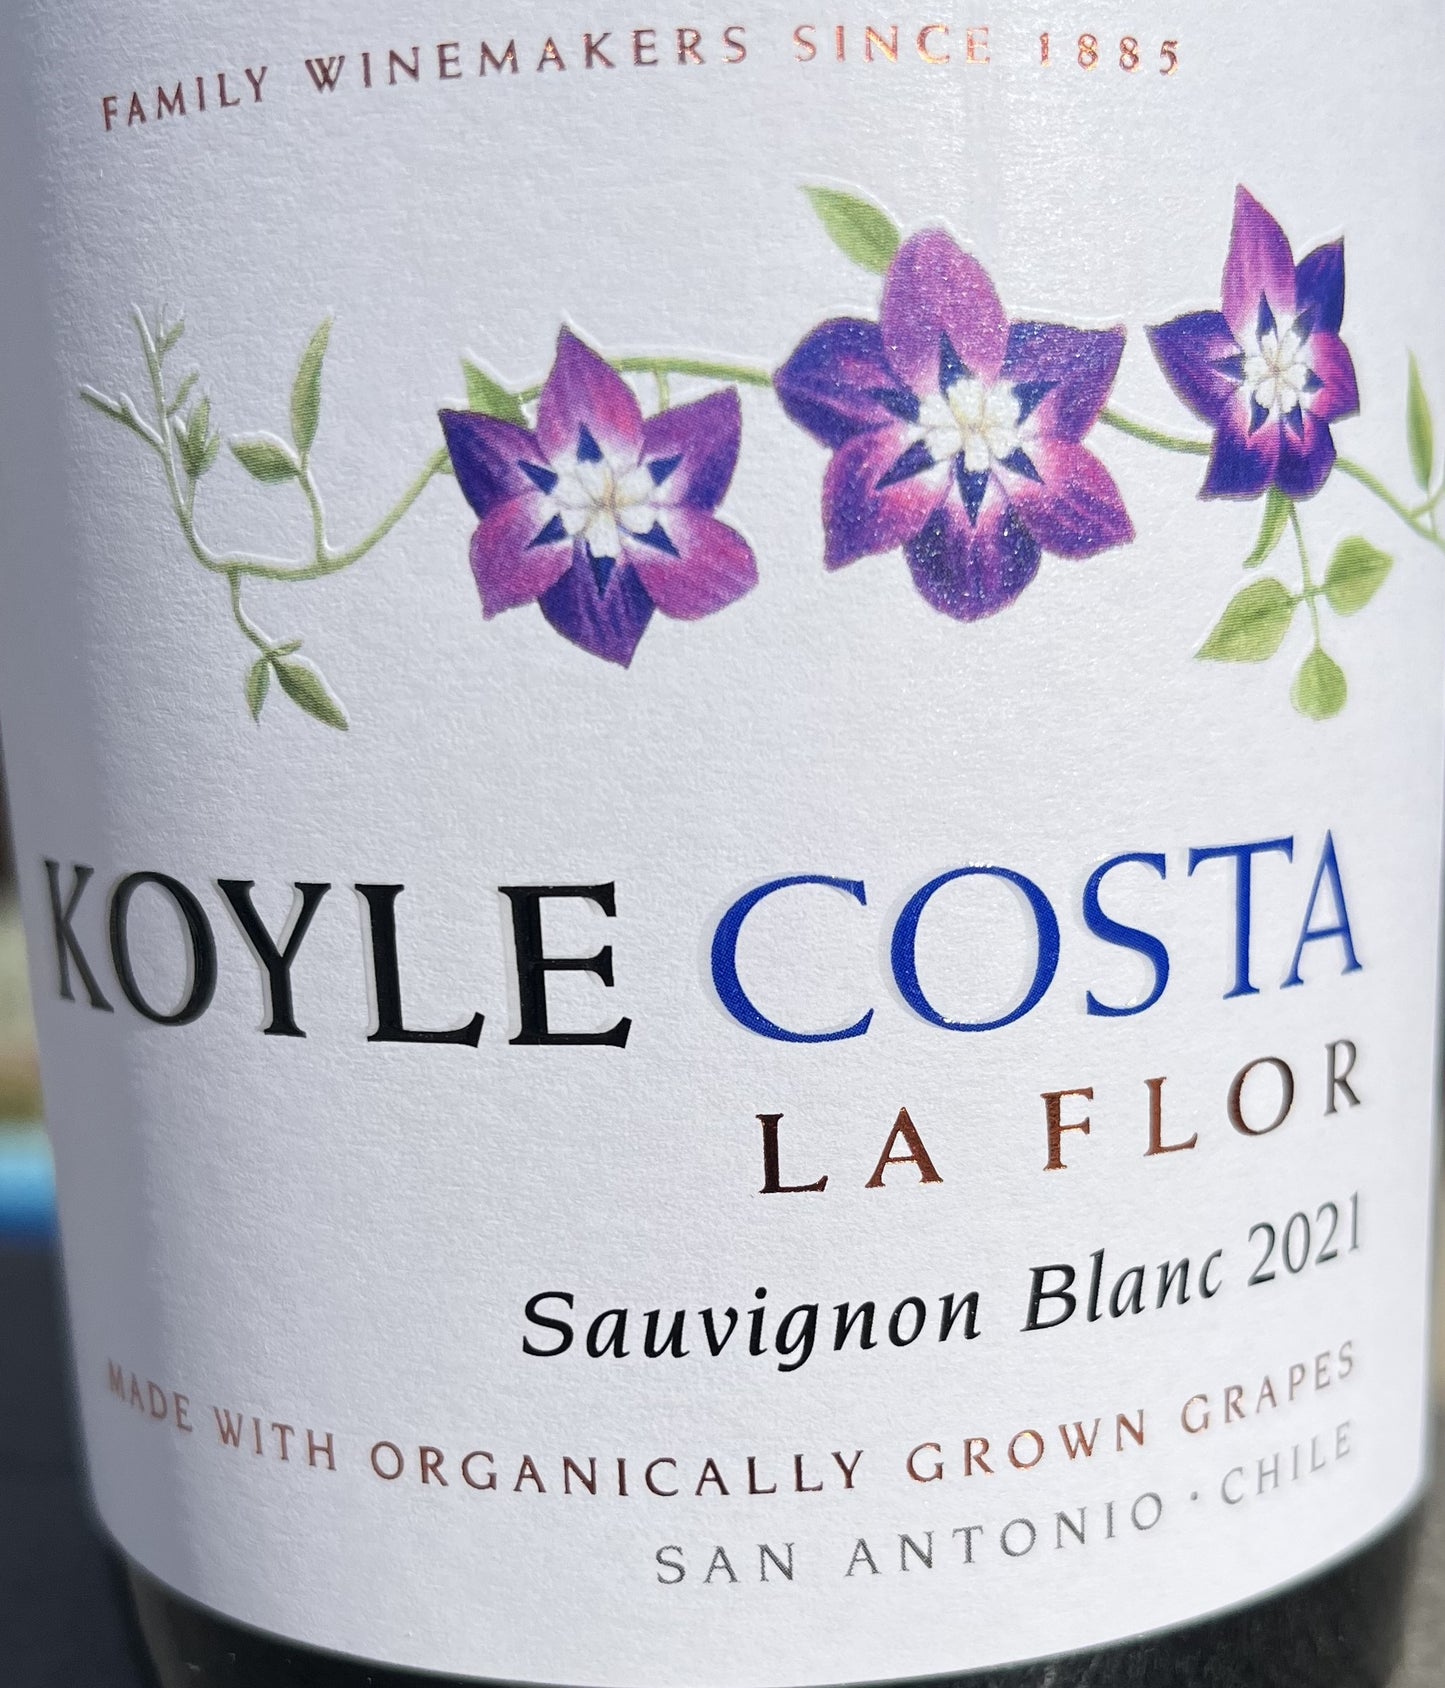 Koyle Costa 'La Flor' - Sauvignon Blanc